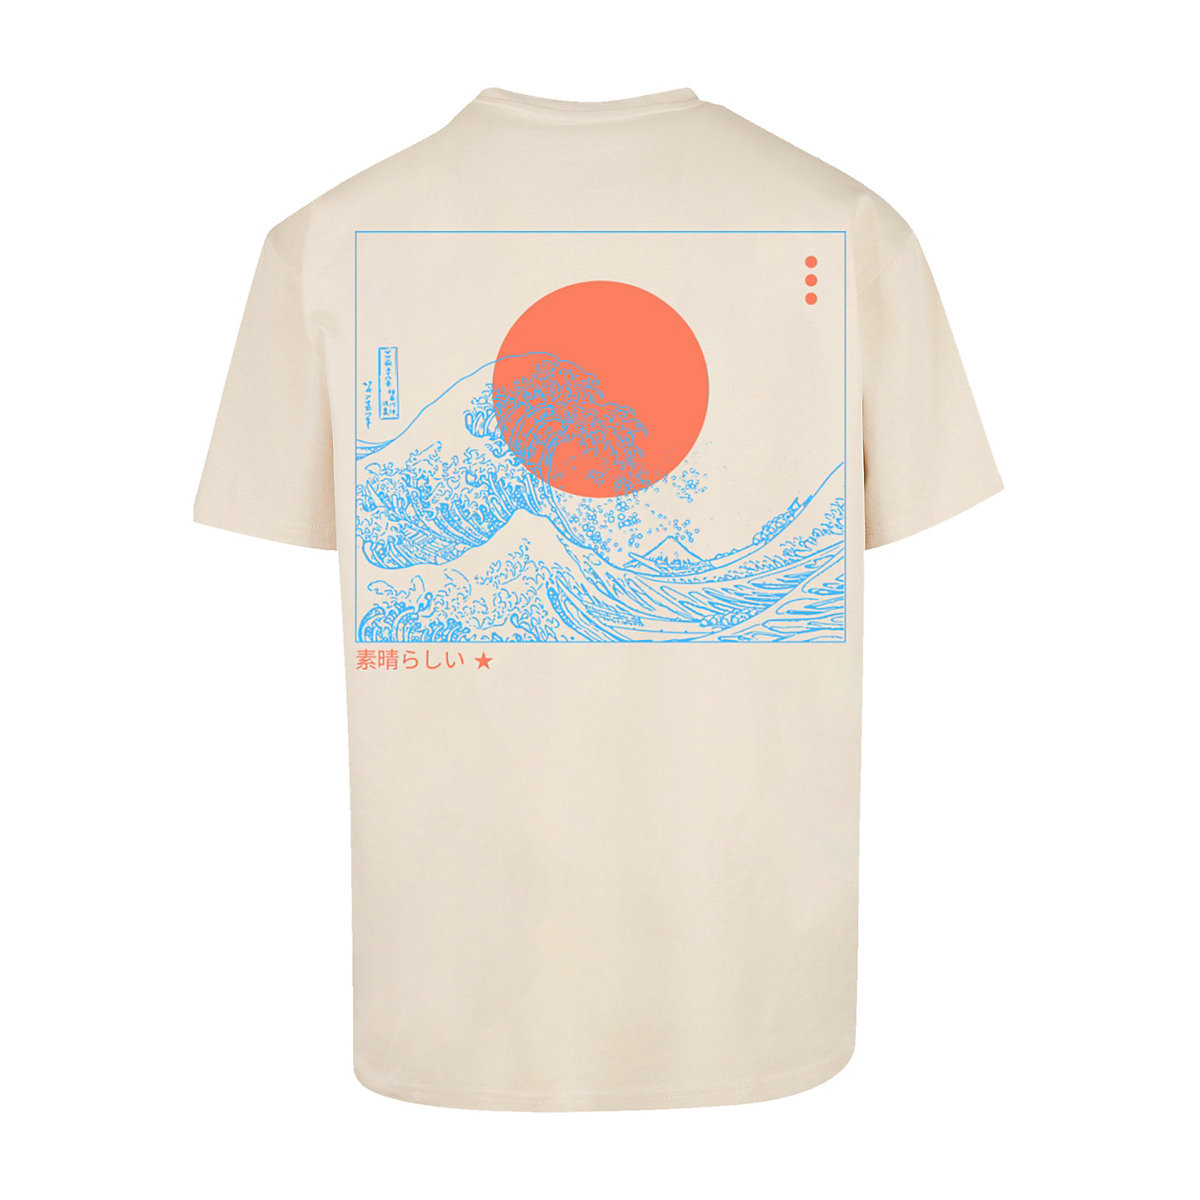 F4NT4STIC PLUS SIZE Kanagawa Welle T-Shirts sand